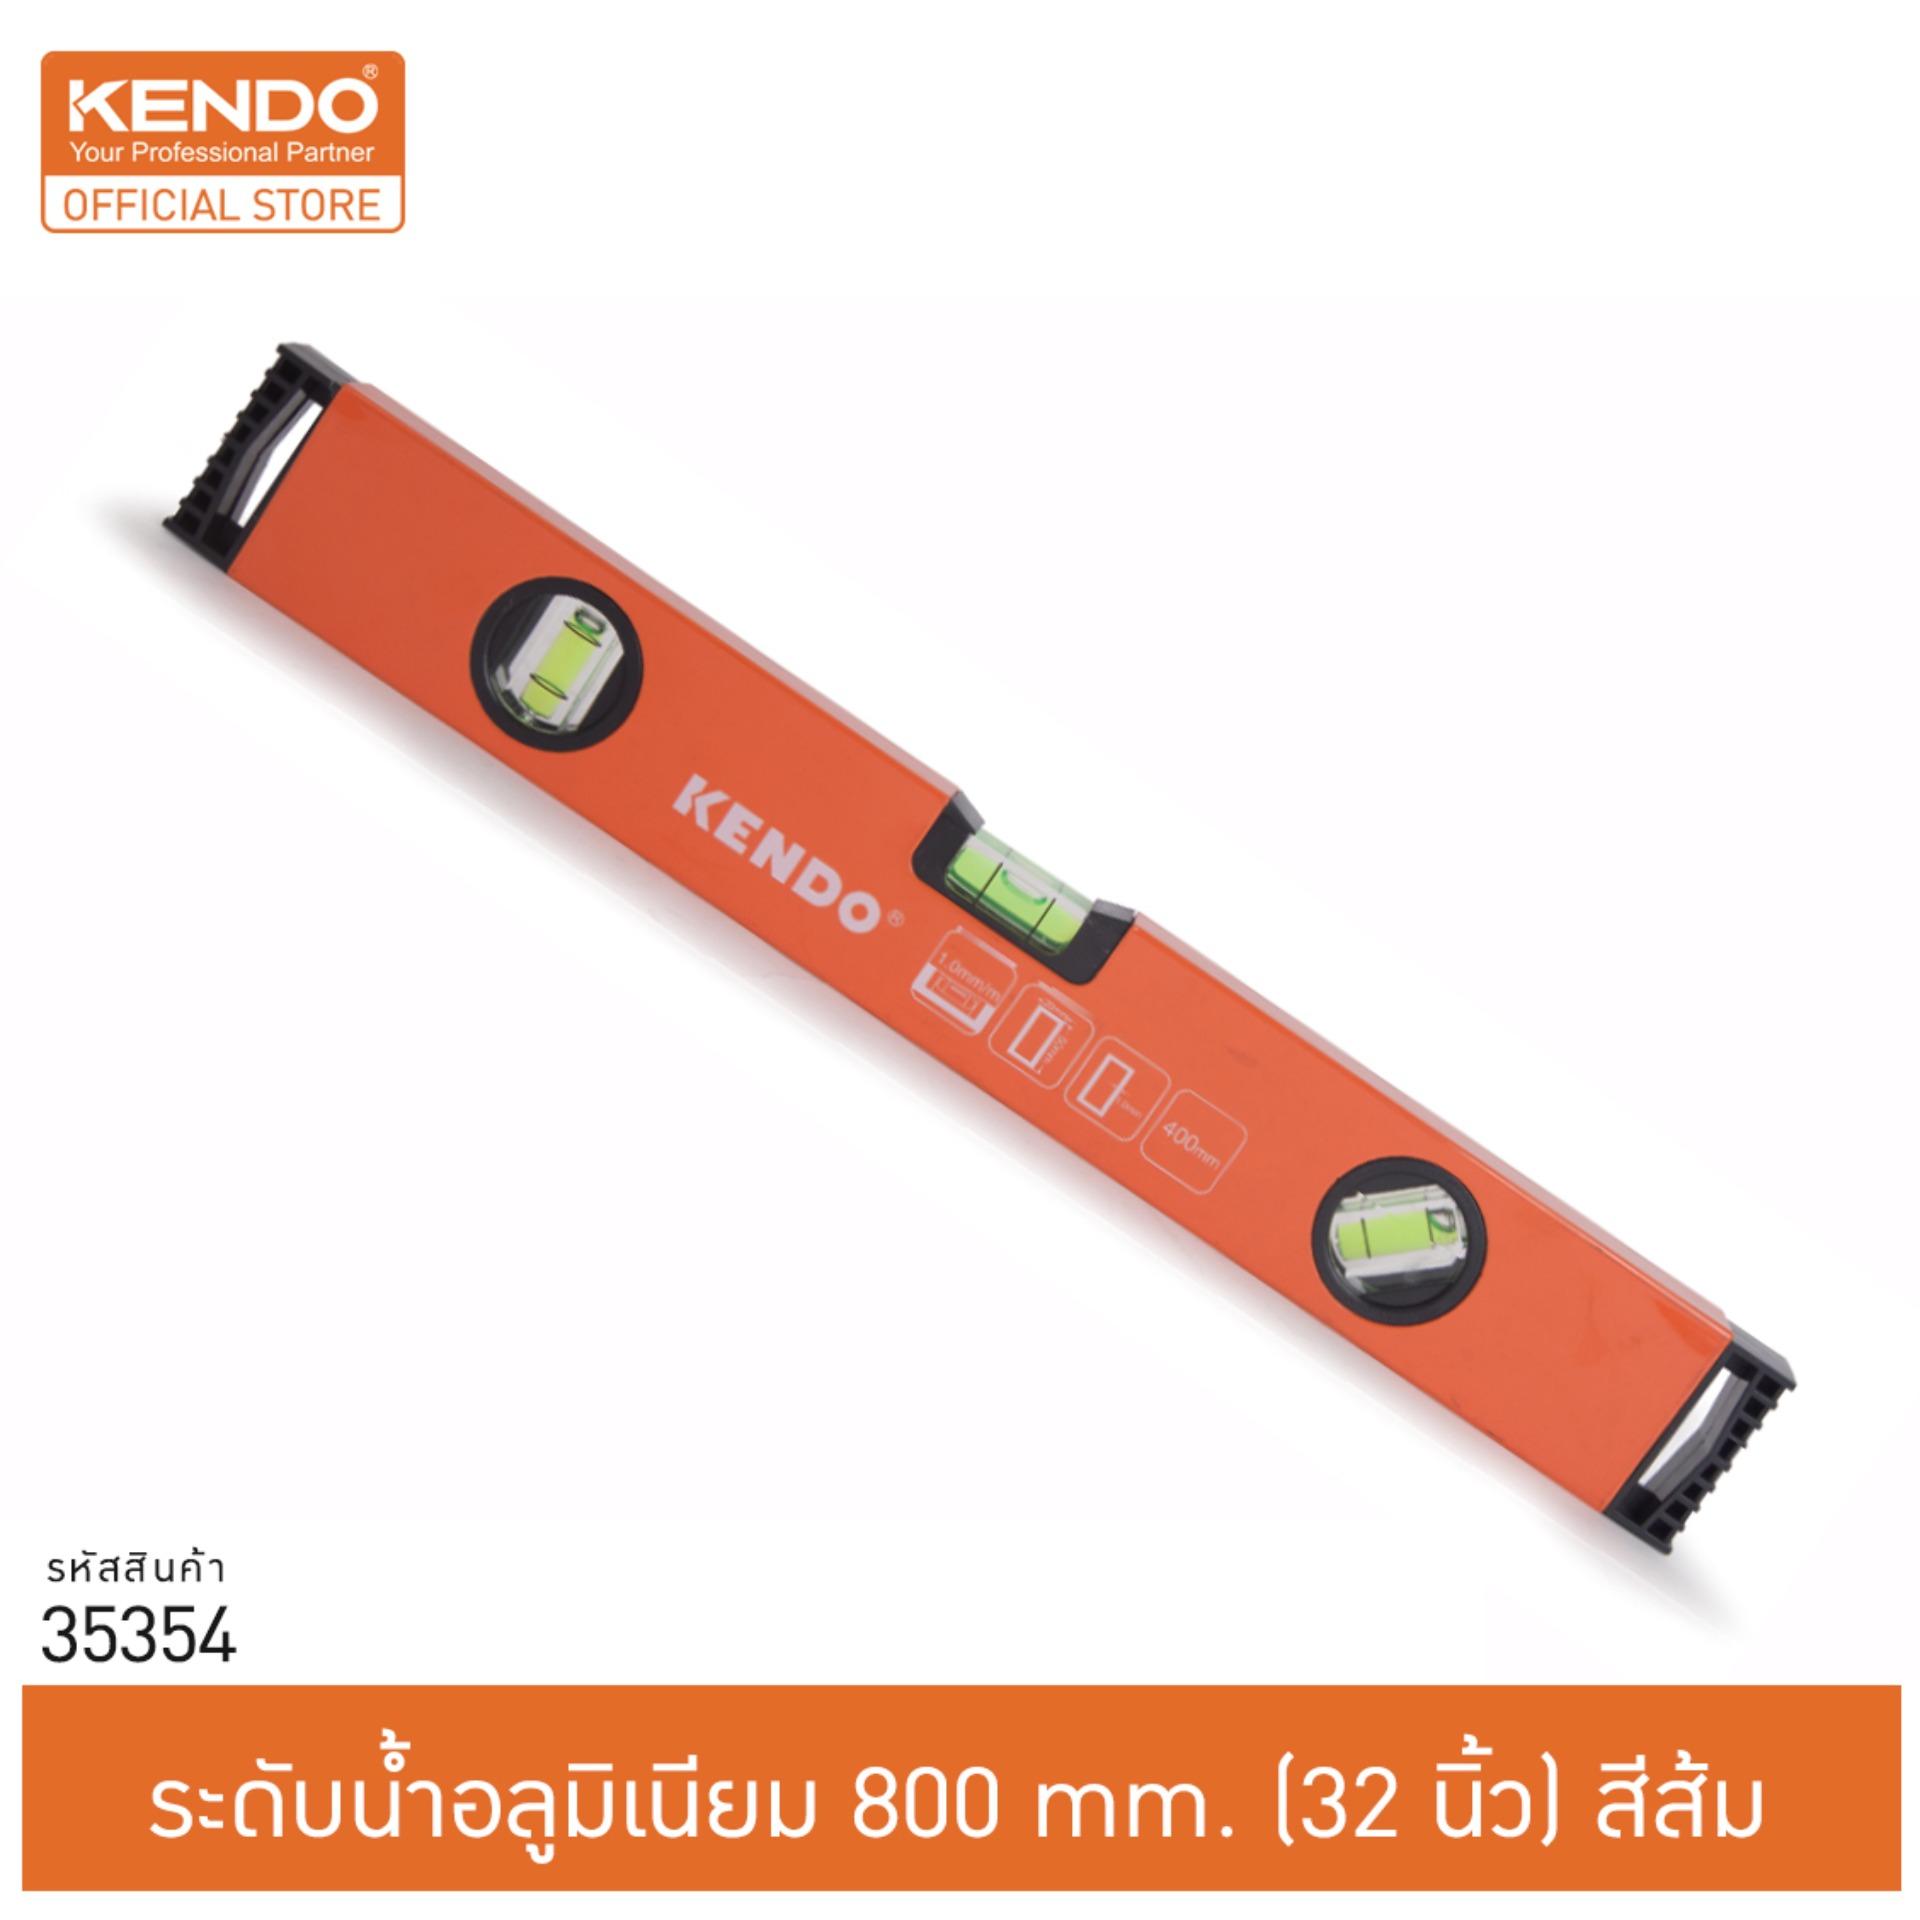 KENDO 35354 ระดับน้ำ แบบกล่อง (อลูมิเนียม) 800 mm. (32 นิ้ว)